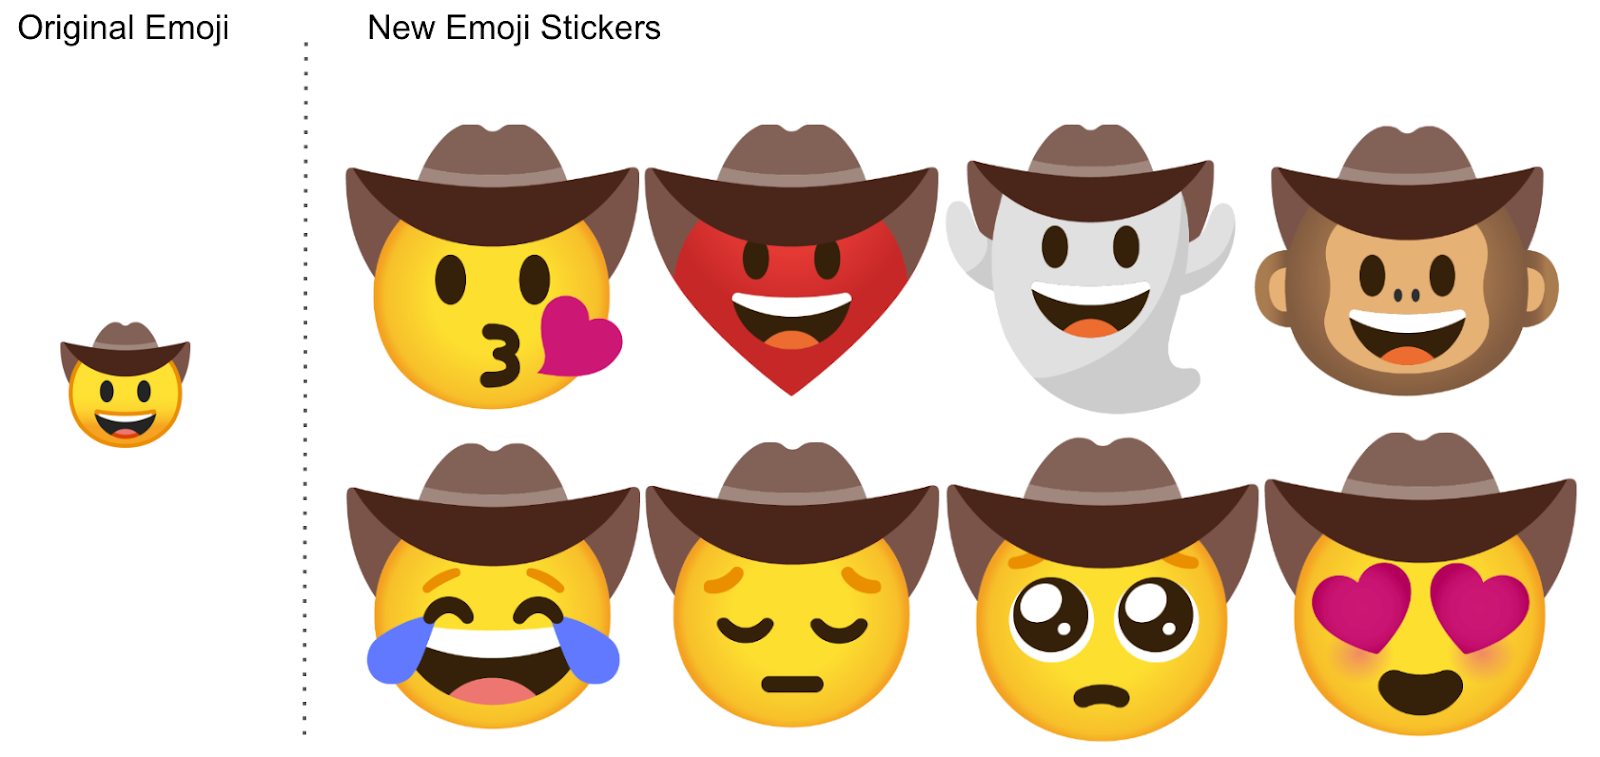 Cómo crear stickers personalizados a partir de emojis usando Gboard